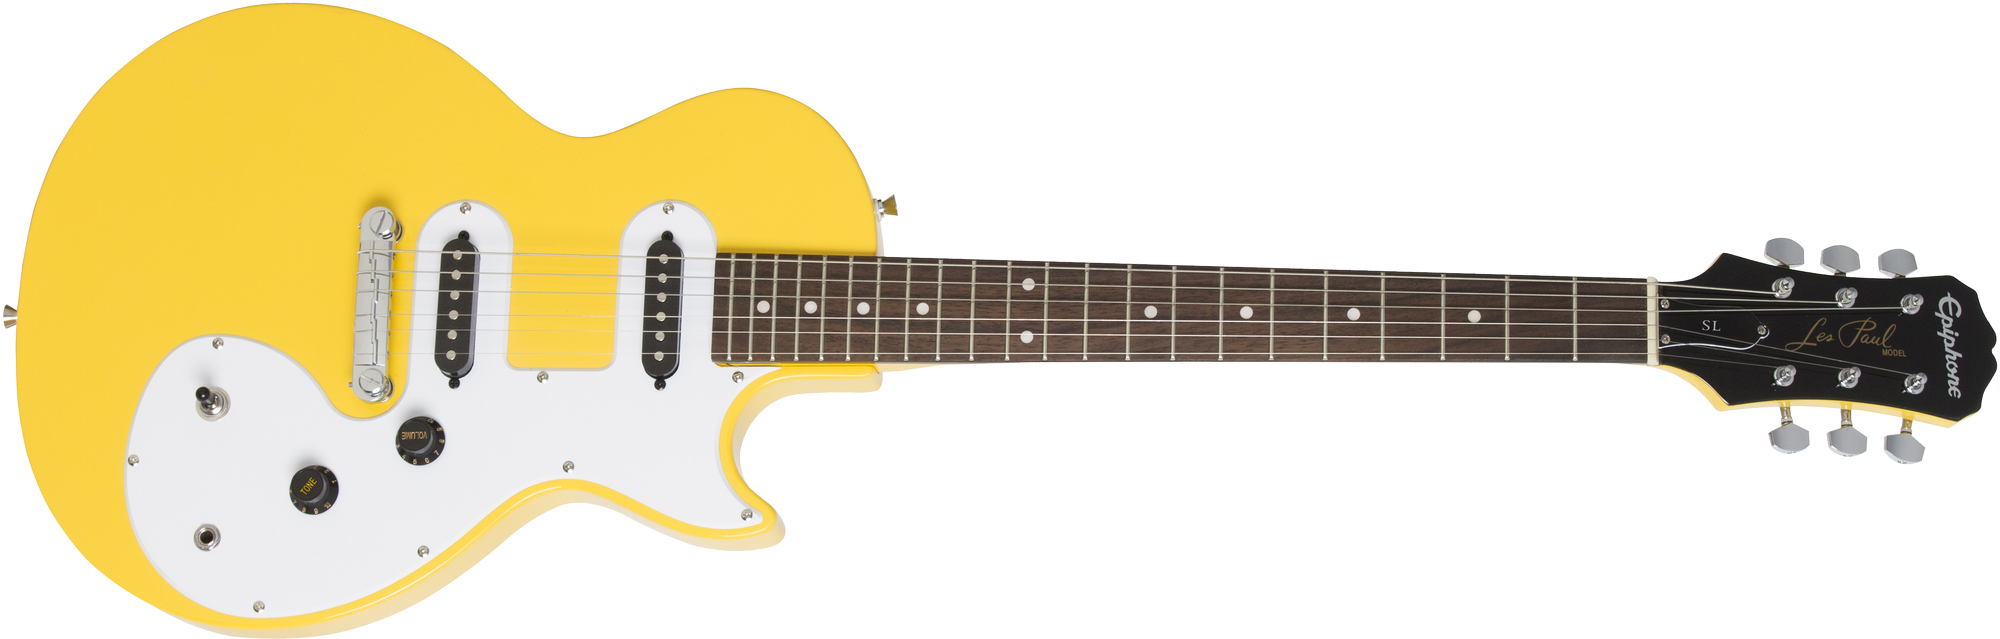 Billede af Epiphone Les Paul Melody Maker El-guitar (Sunset Yellow)